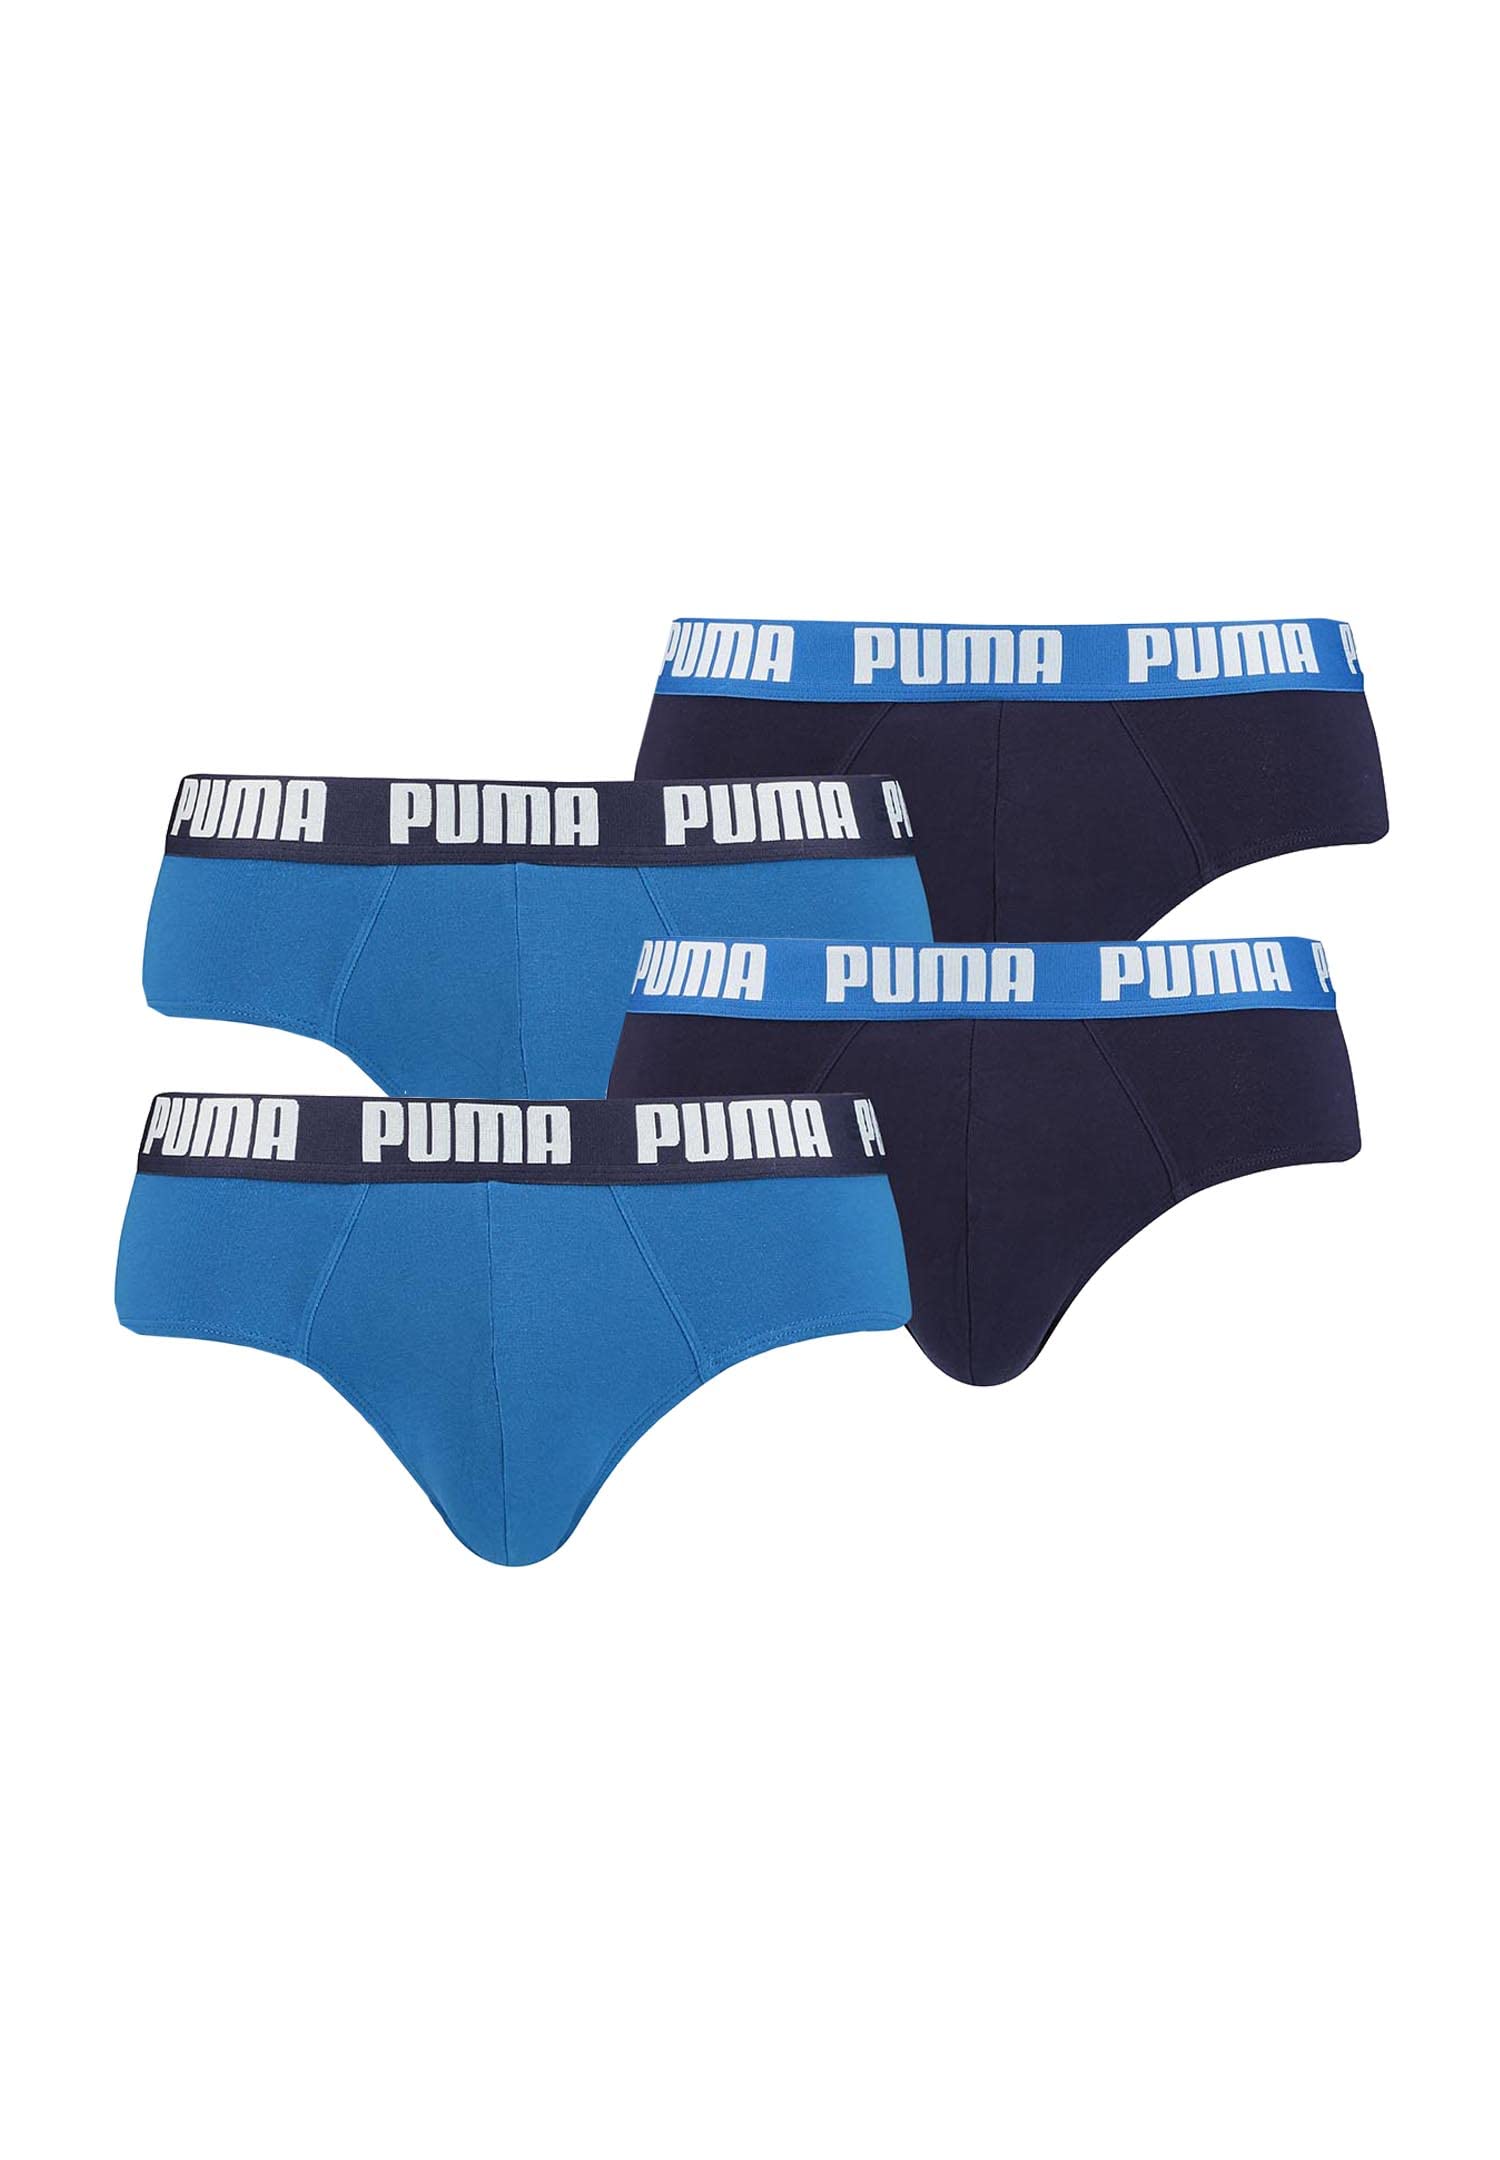 PUMA Basic Brief Men Herren Unterhose Pant Unterwäsche 4er Pack, Farbe:420 - True Blue, Bekleidungsgröße:S